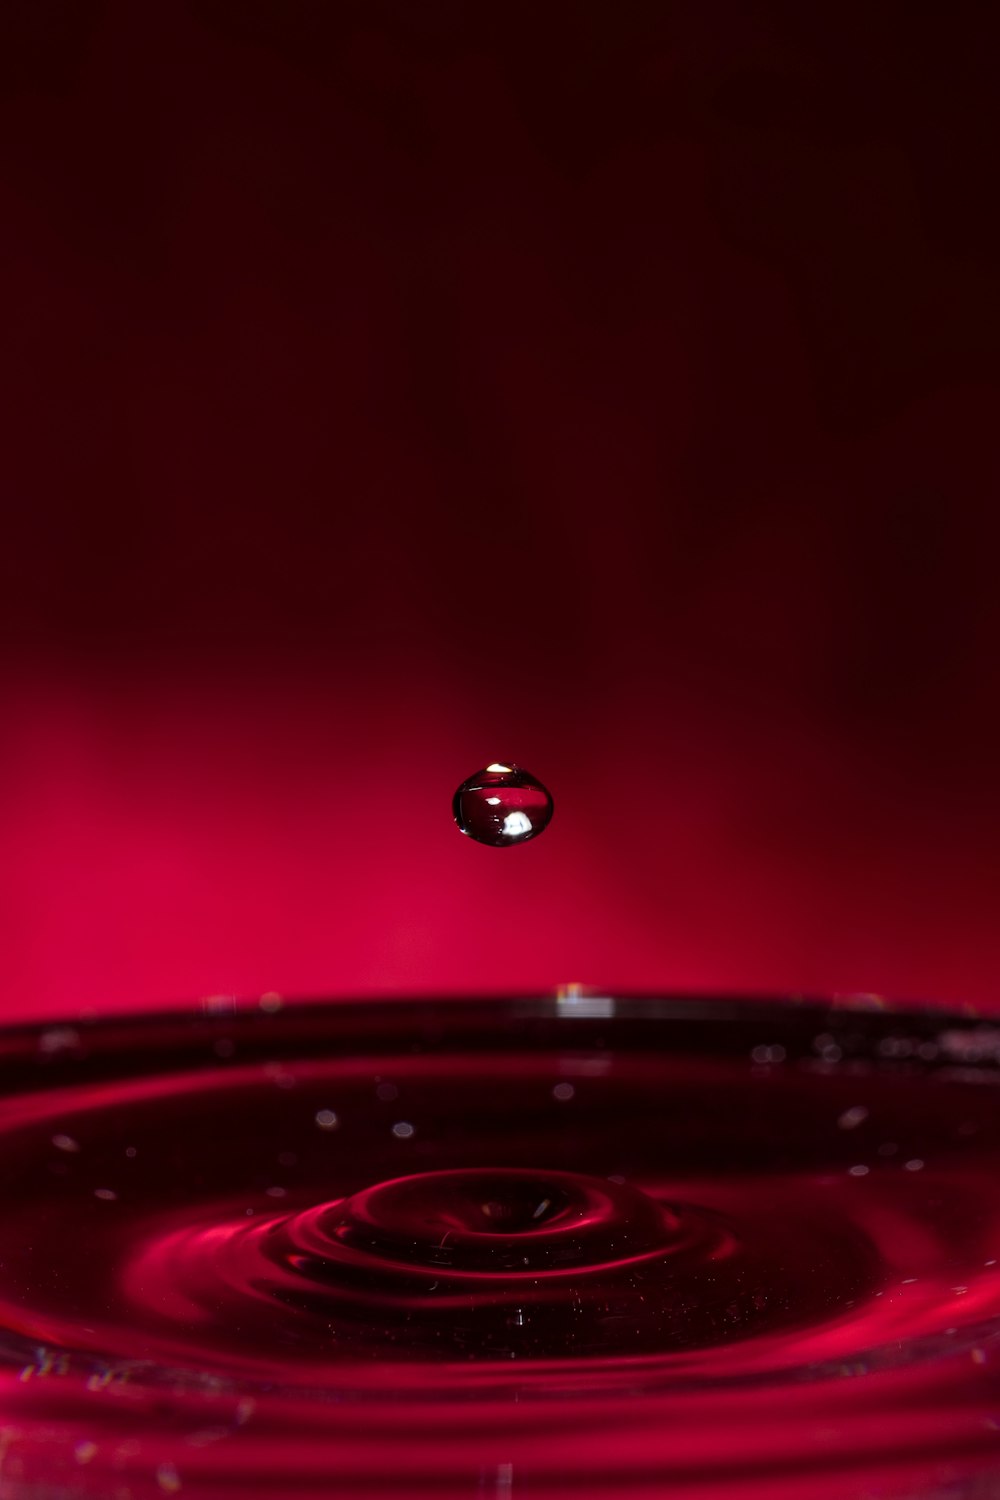 gotículas de água na superfície vermelha